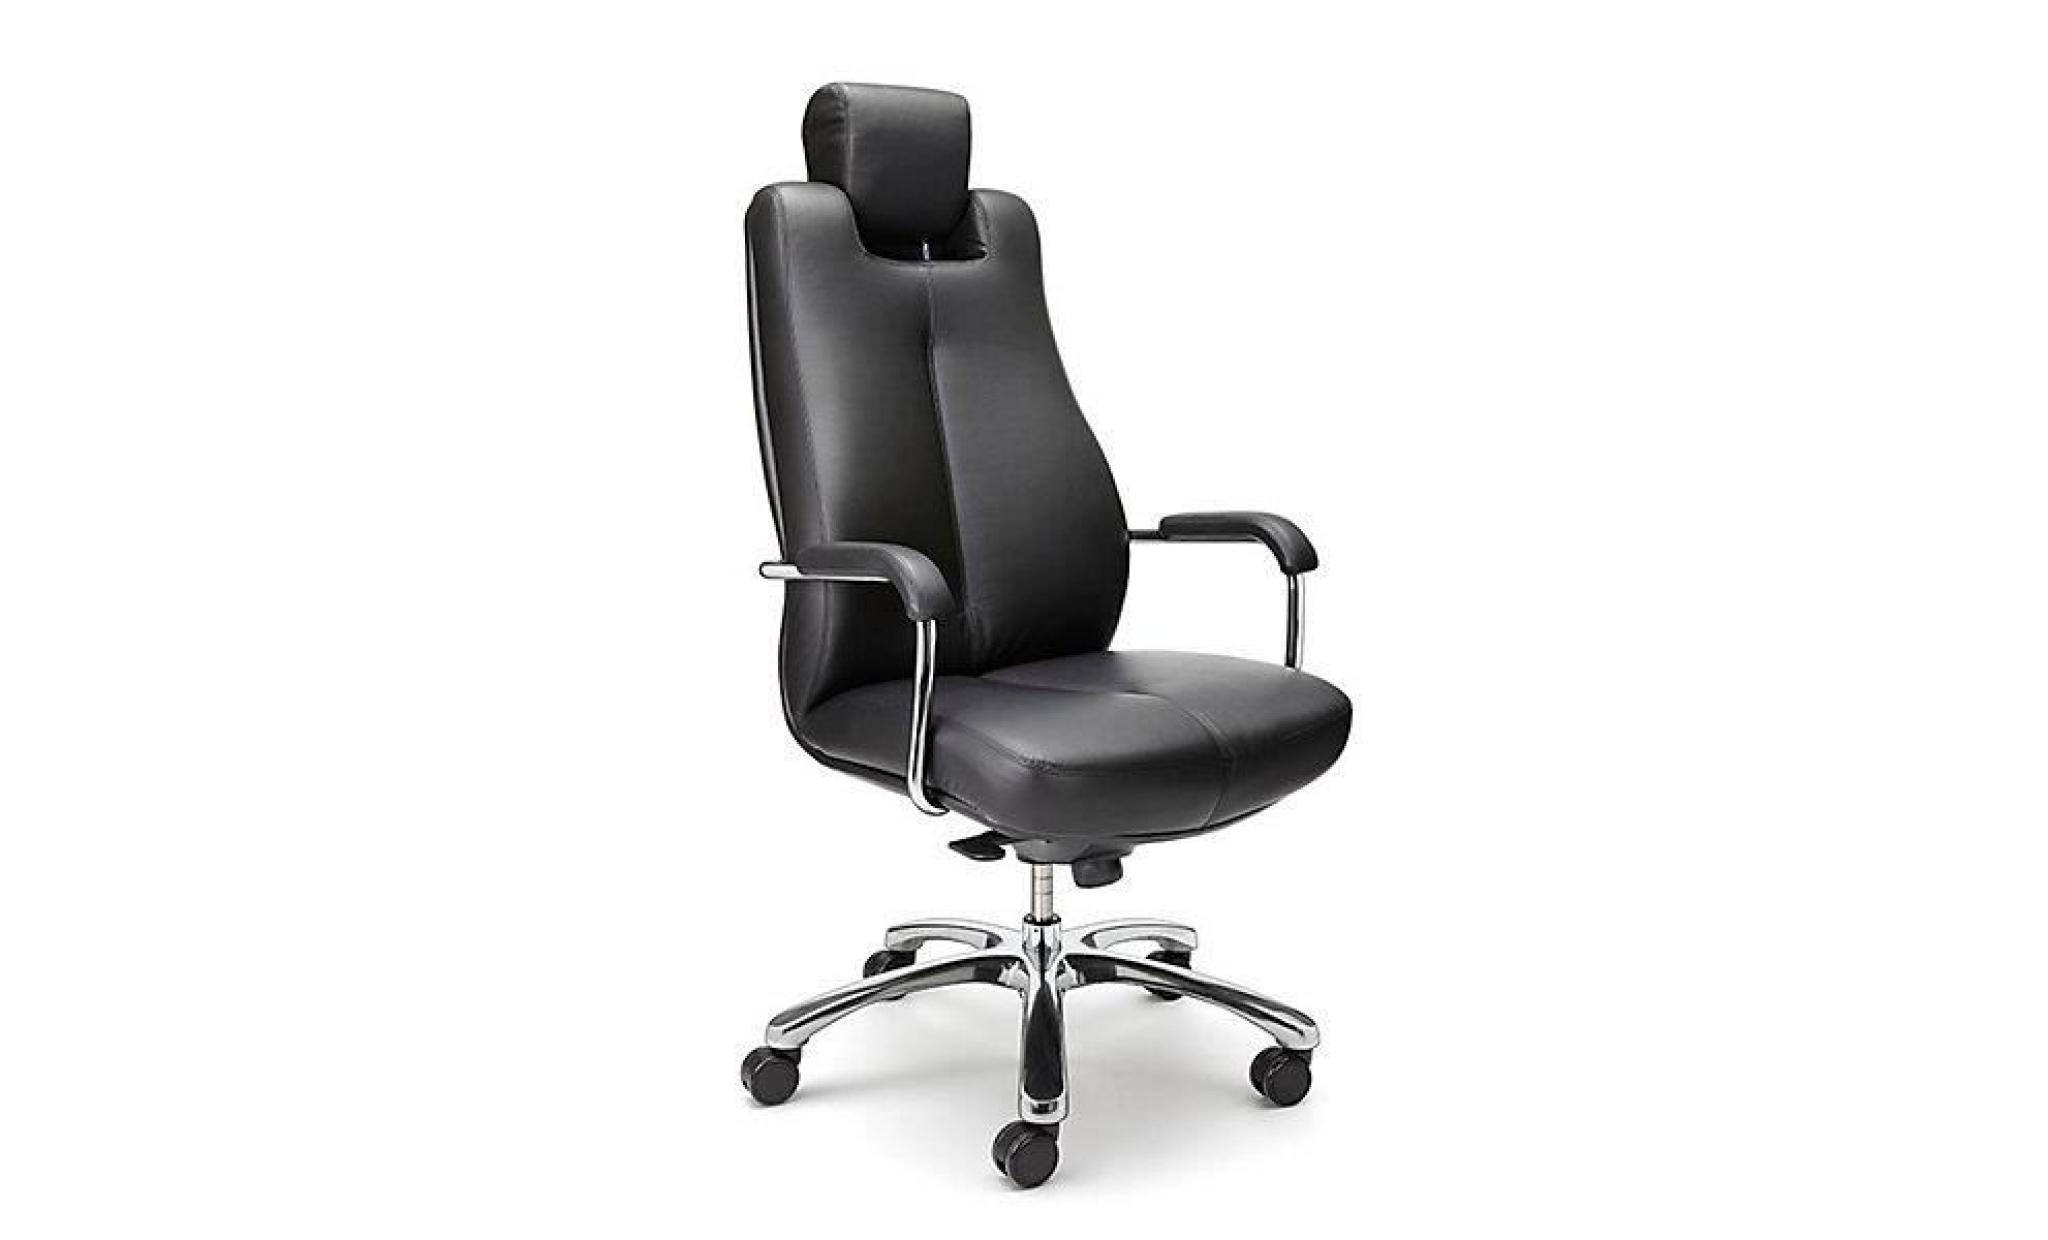 siège de bureau pivotant   fauteuil de bureau, cuir souple noir, appuie tête fixe   chaise chaise de bureau chaises chaises de